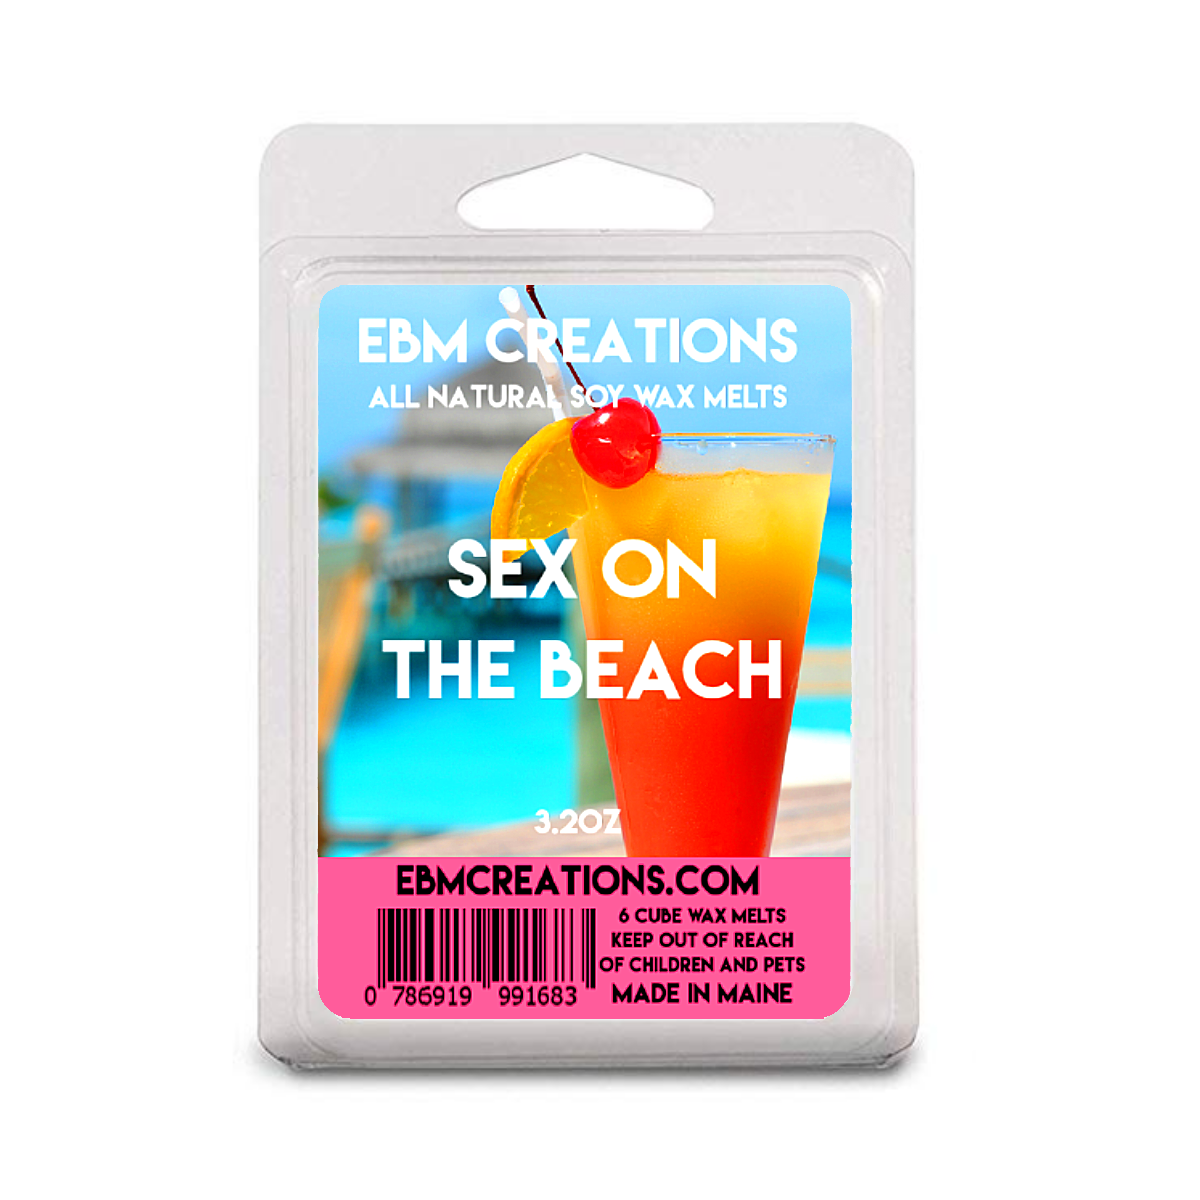 Sex On The Beach - 3.2 oz Clamshell